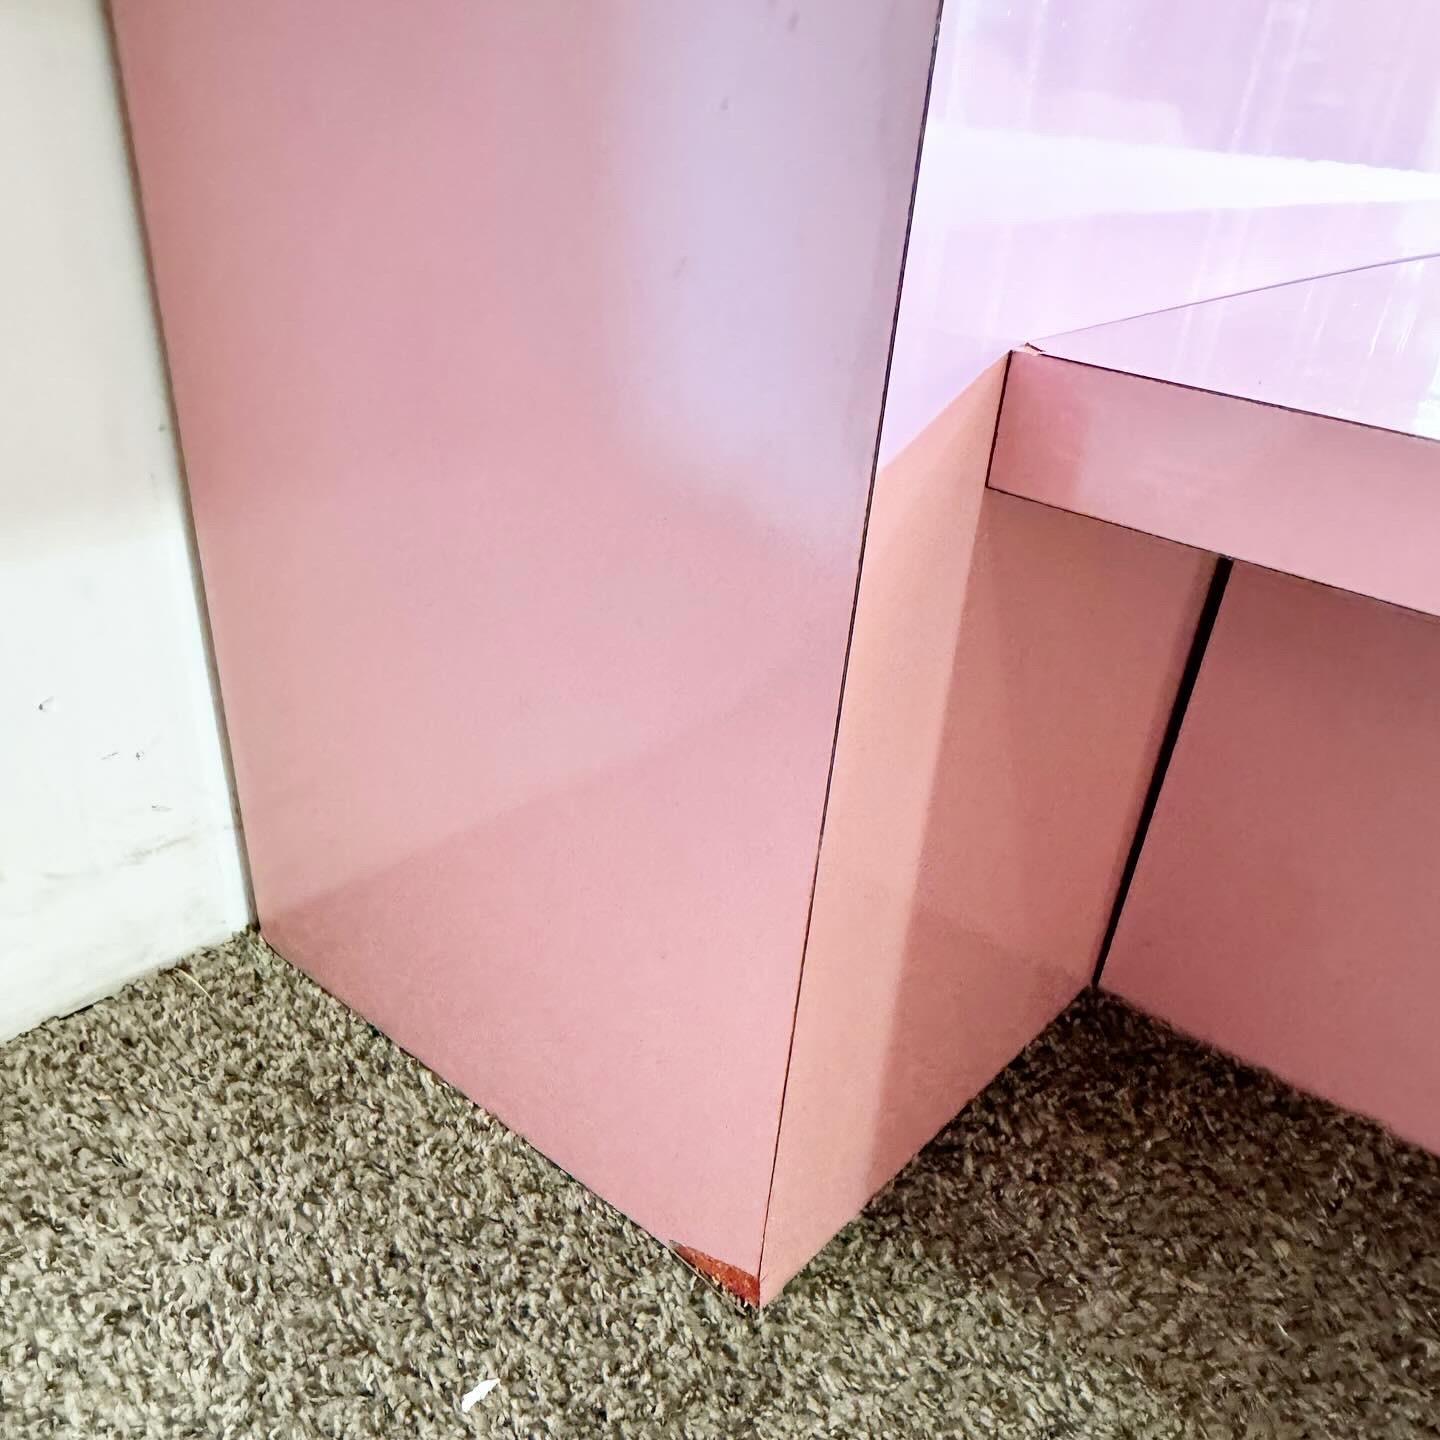 Verwandeln Sie Ihr Schlafzimmer in eine moderne Oase mit dem Postmodern Pink Lacquer Laminate King Size Platform Bed and Headboard. Dieses Ensemble besticht durch seine auffällige rosafarbene Lackierung und setzt damit ein mutiges und stilvolles